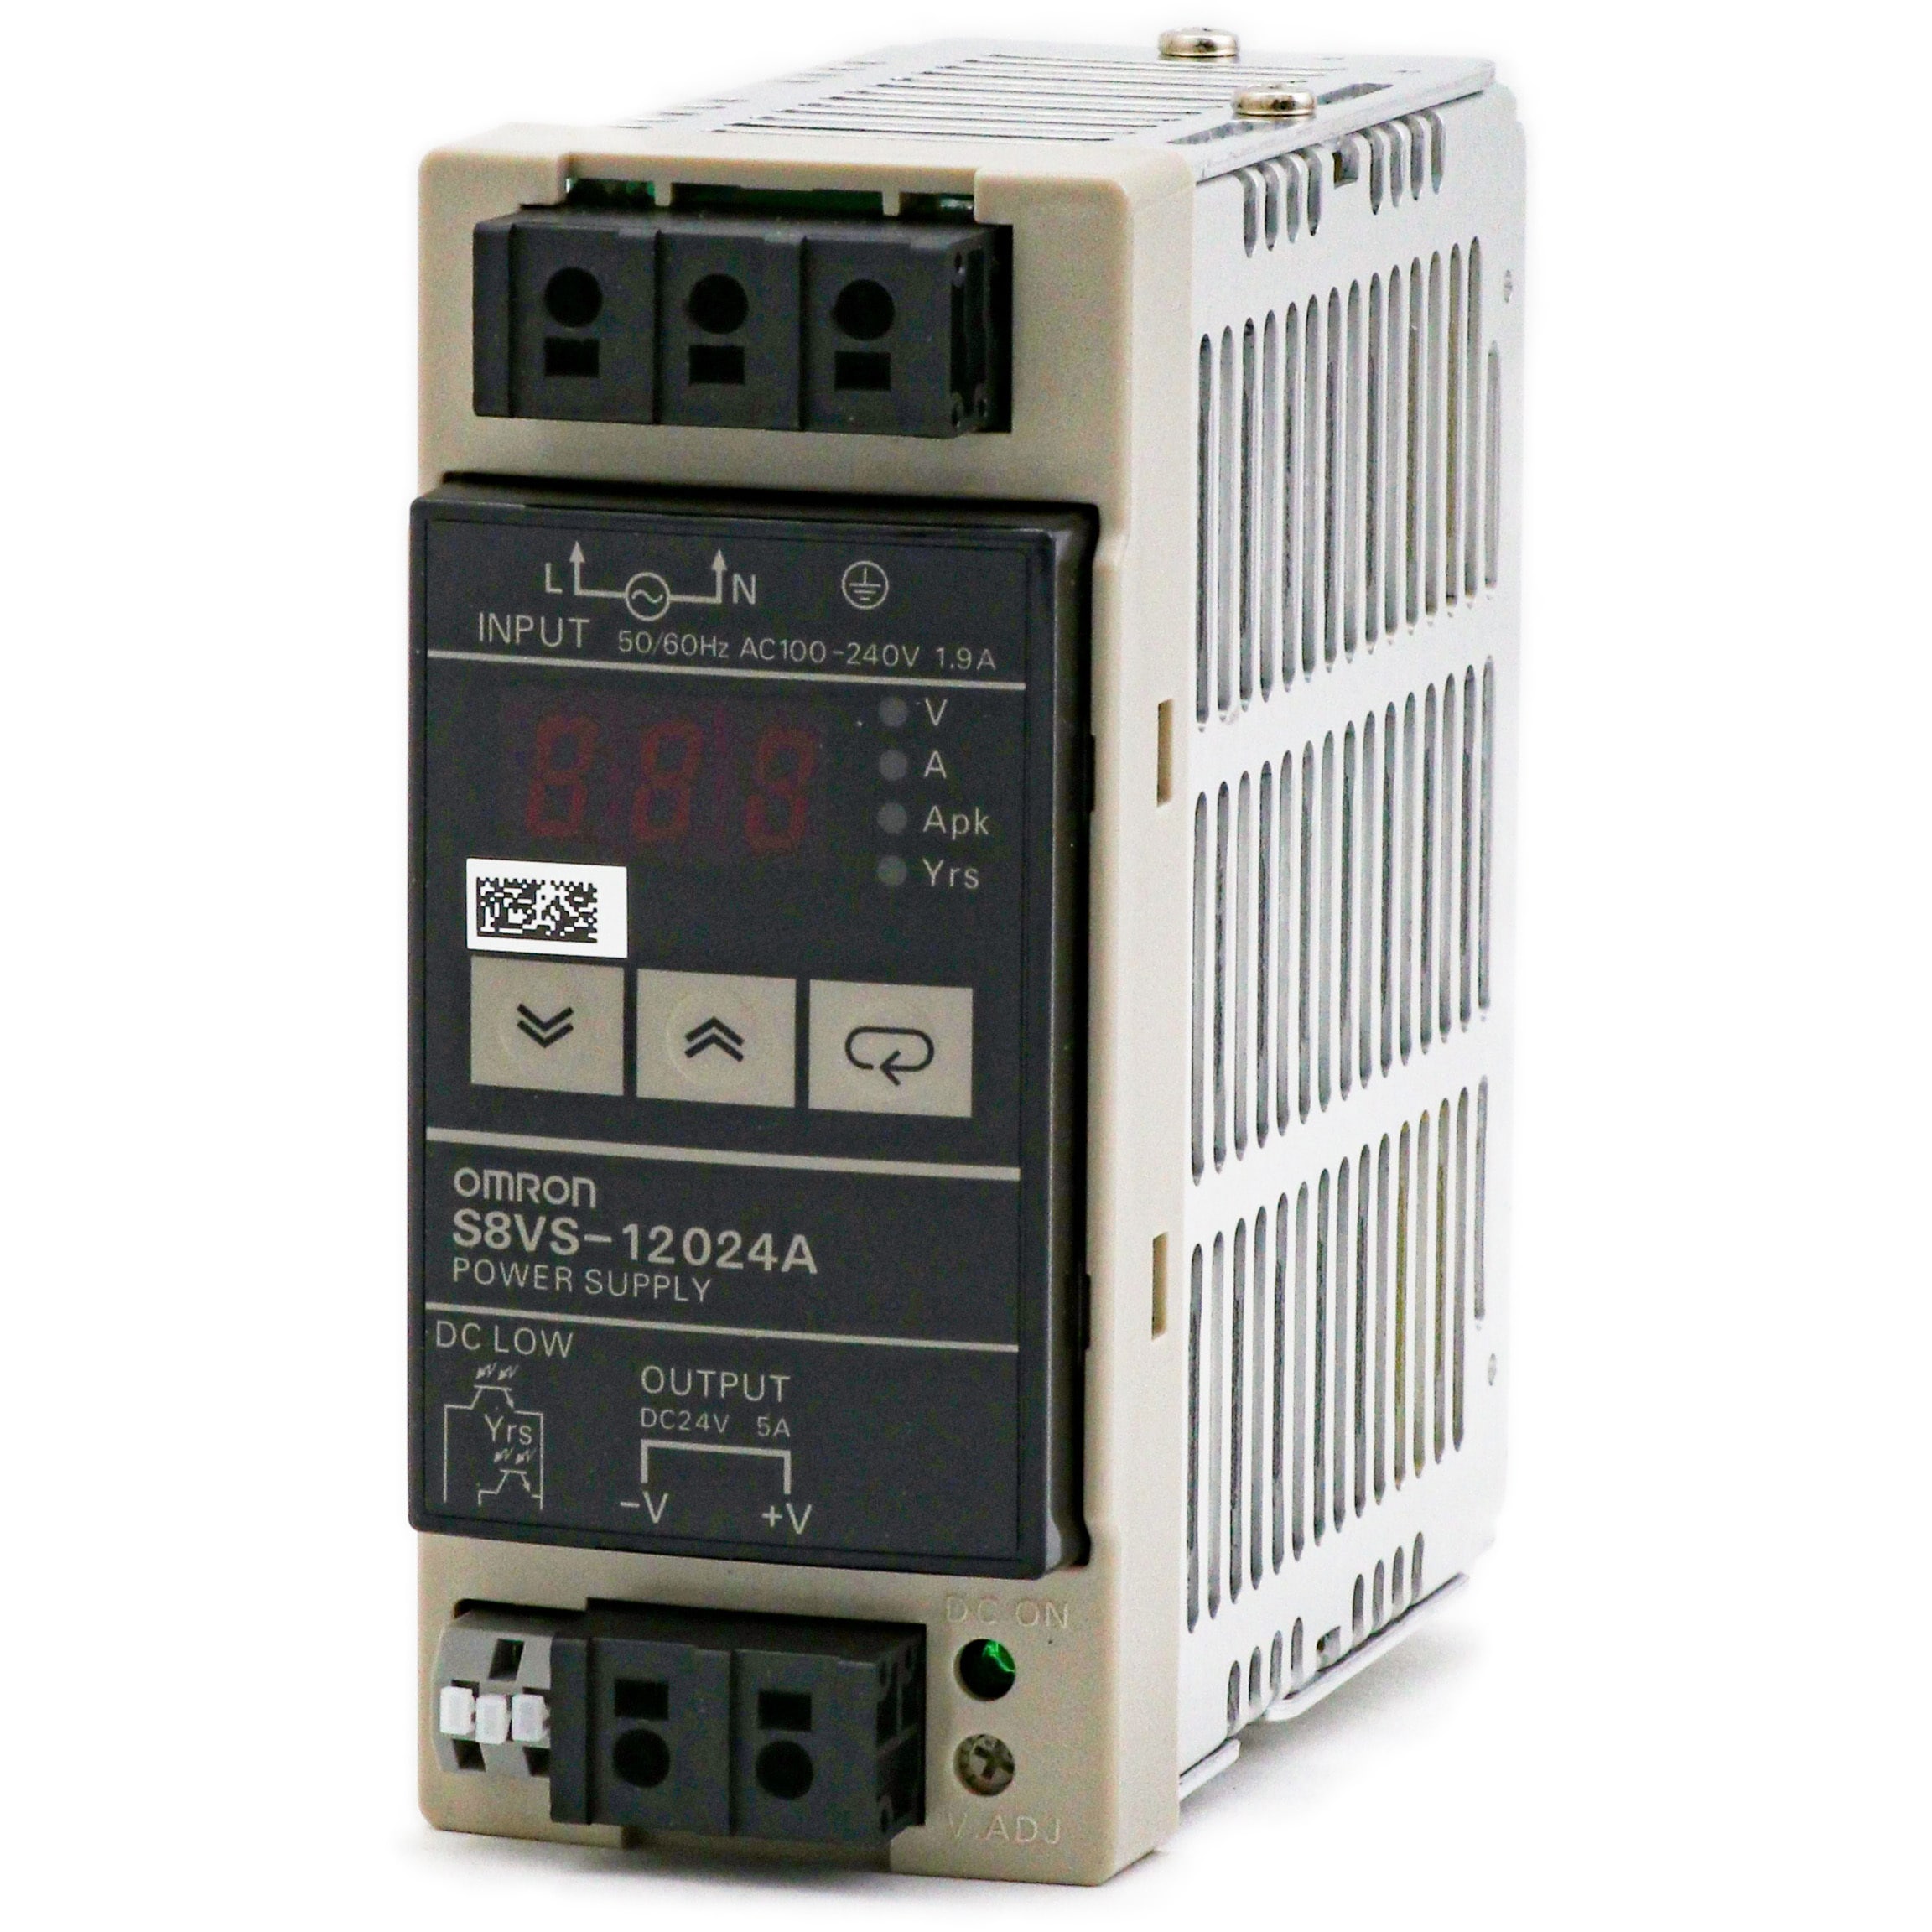 OMRON(オムロン) スイッチング パワーサプライ S8VSタイプ S8VS-12024A - 4